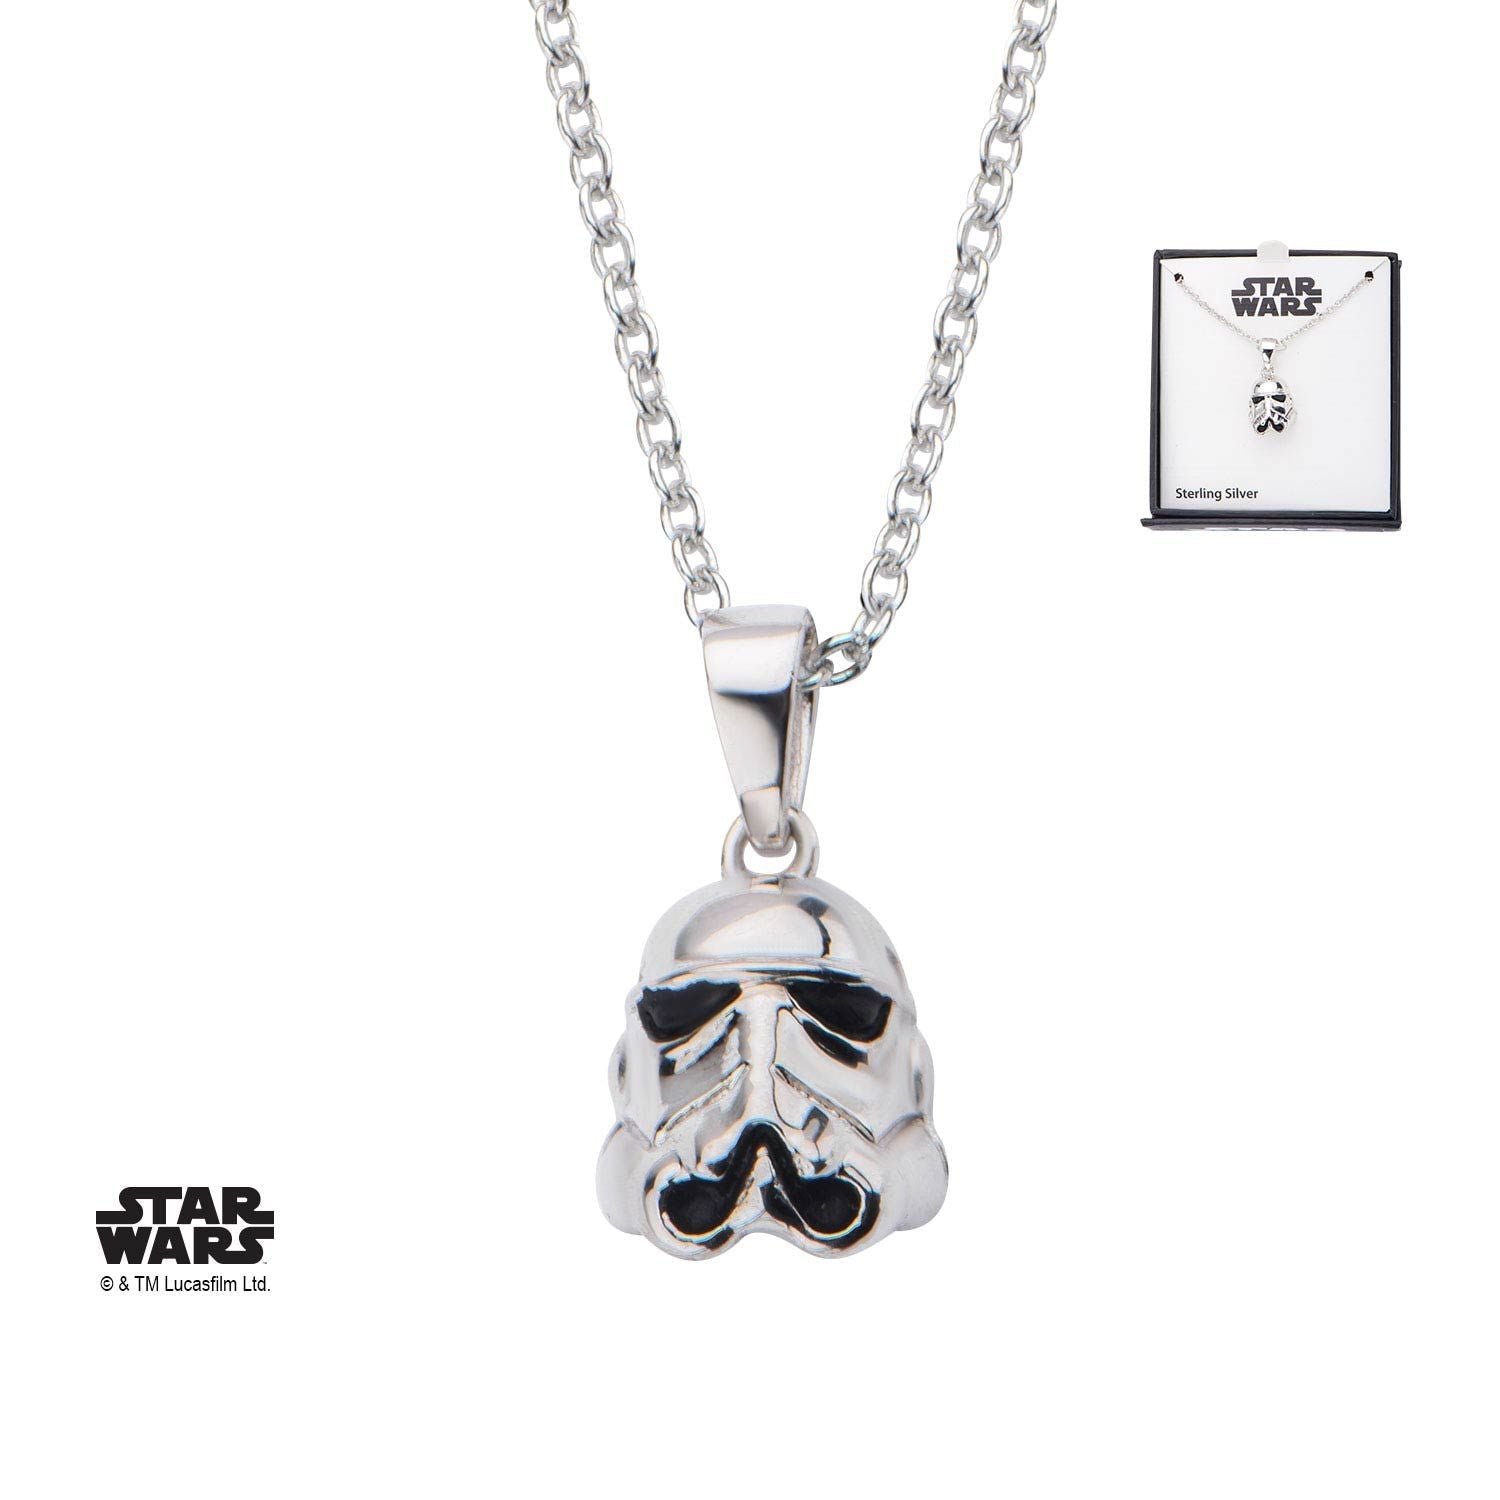 STAR WARS Star Wars 3D Stormtrooper Pendant Necklace, 925 Sterling Silver -Rebel Bod-RebelBod